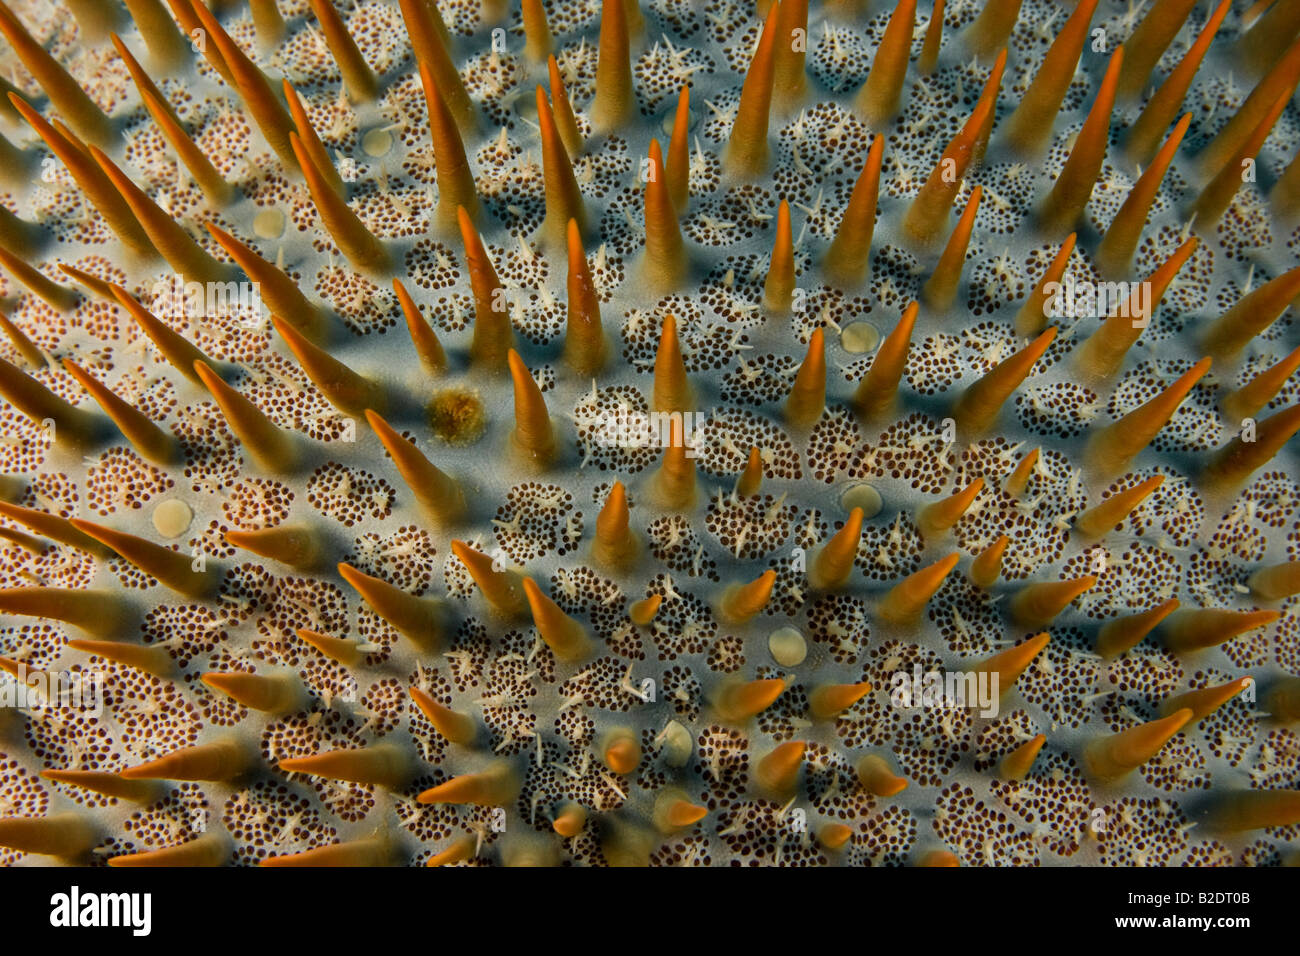 La couronne d'épines, étoile de mer Acanthaster planci, se nourrit de coraux vivants, Yap, Micronésie. Banque D'Images